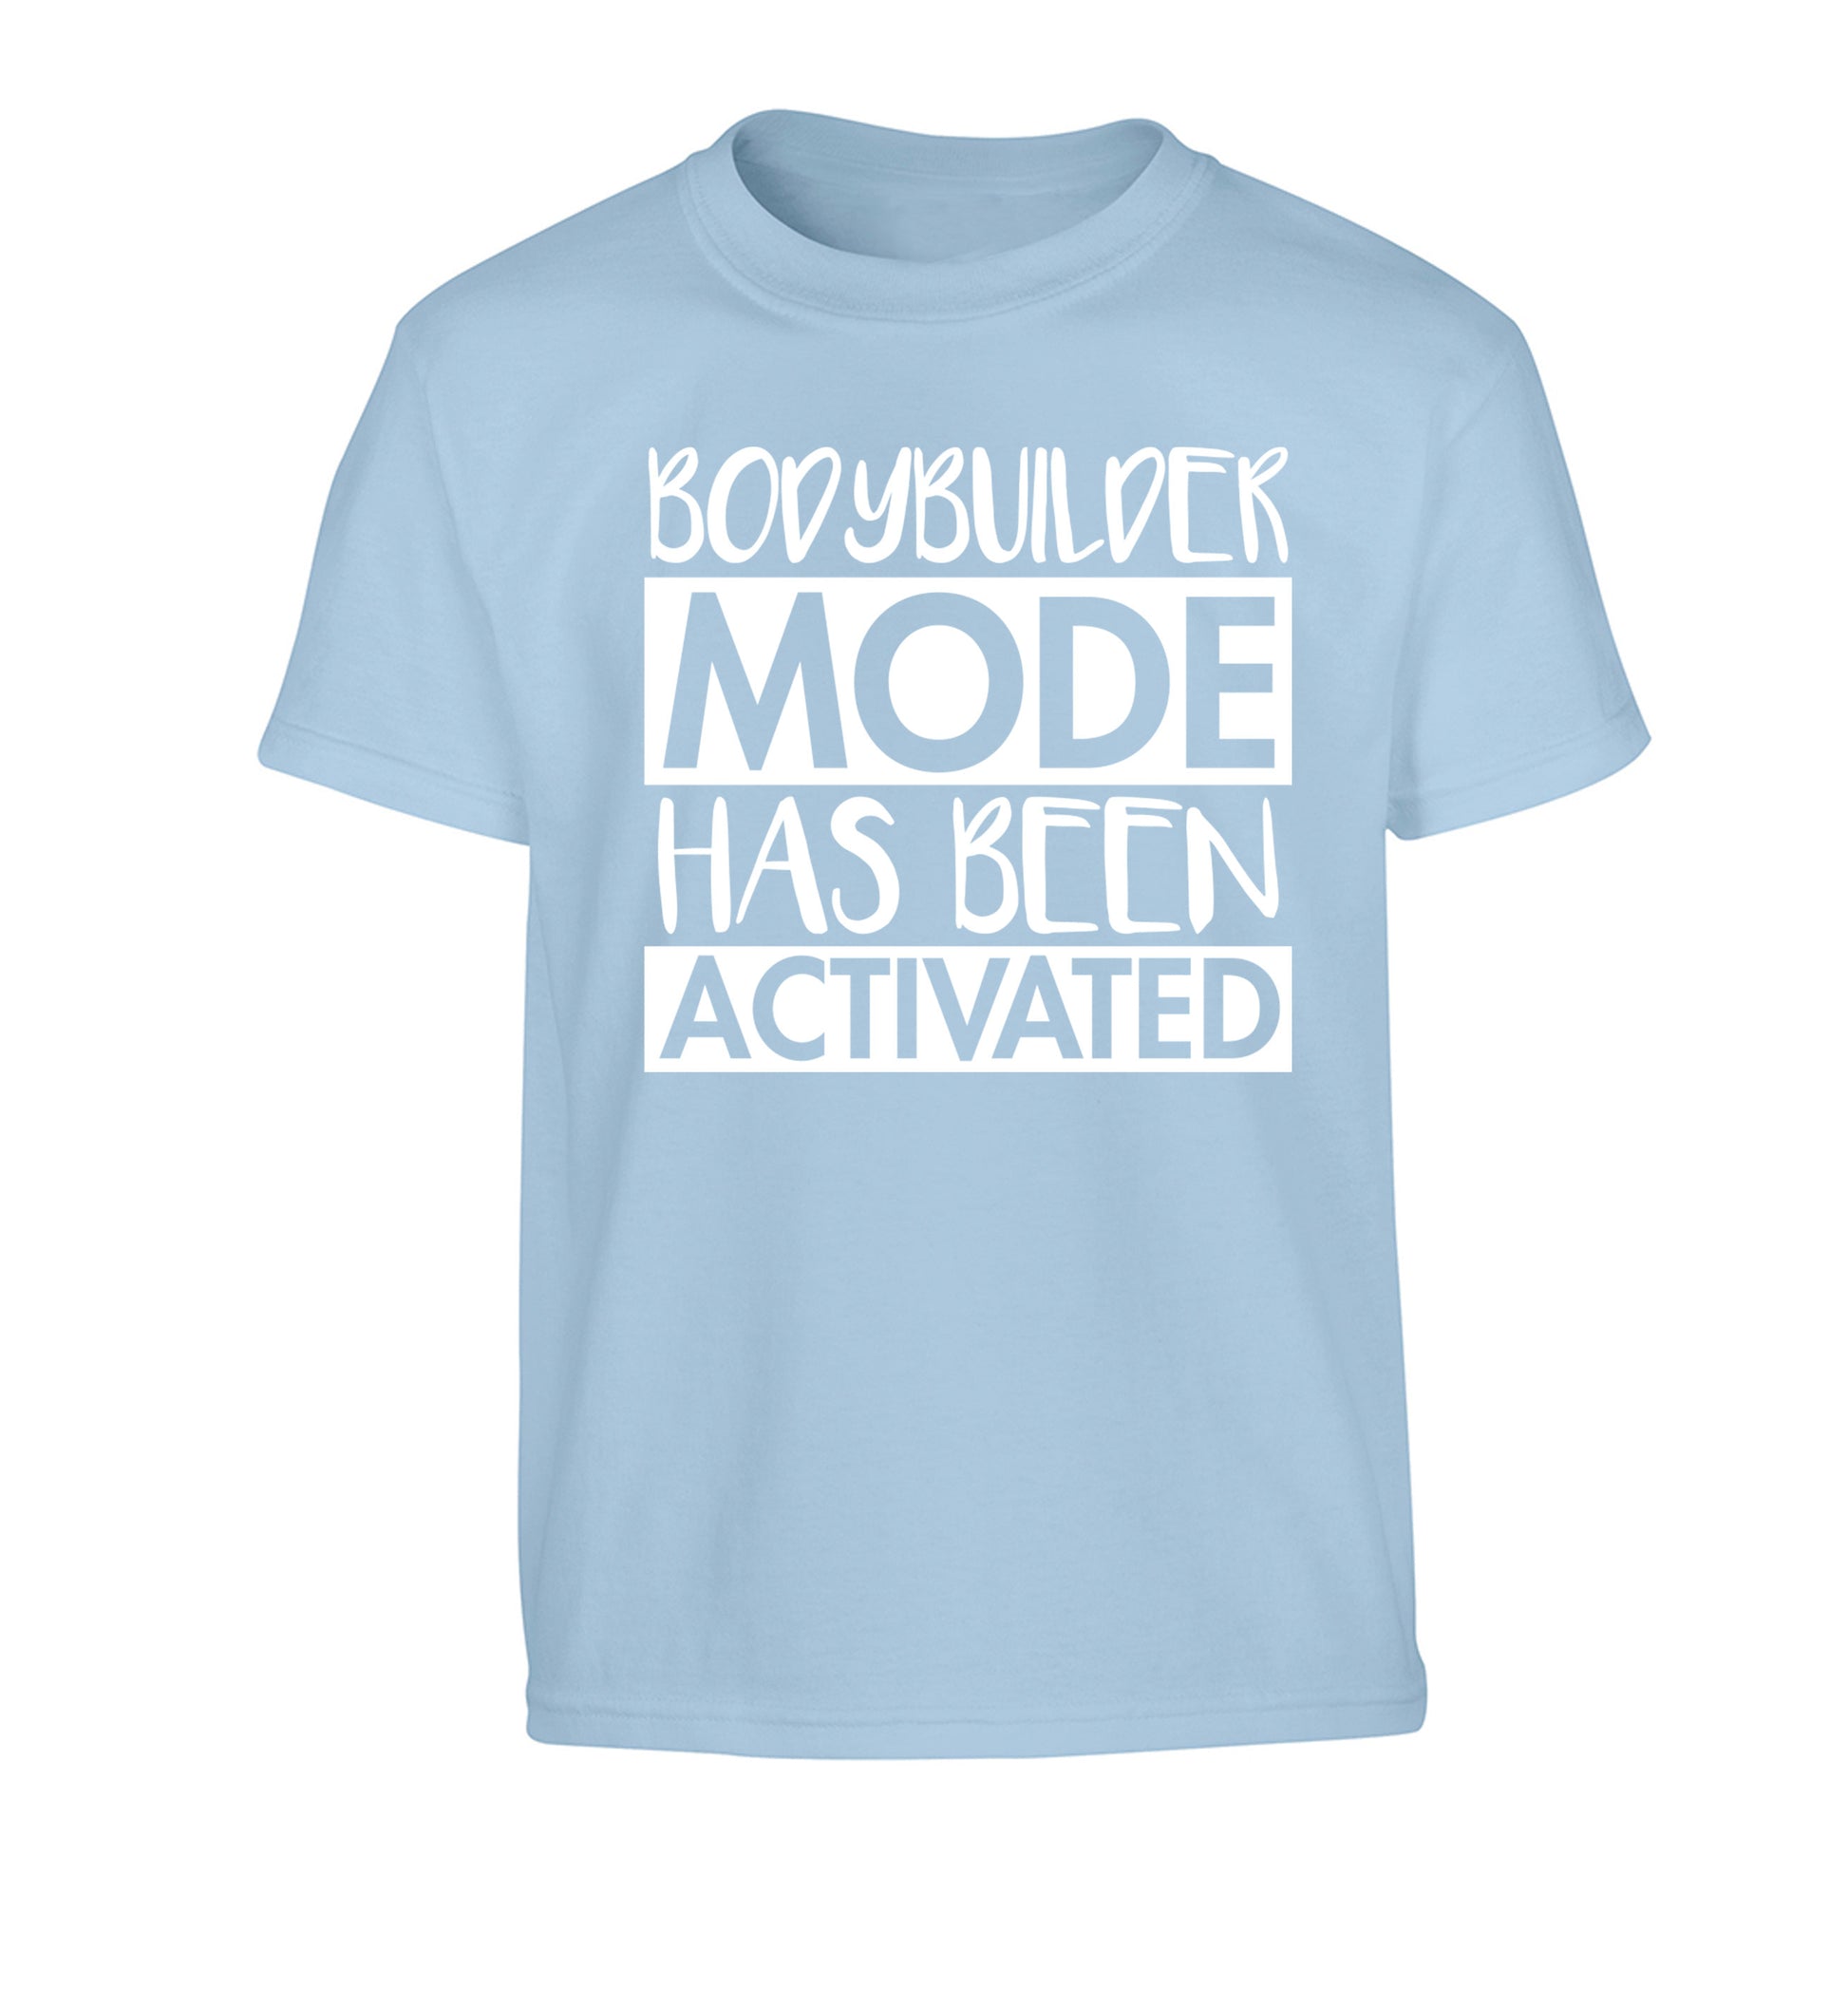 Bodybuilder mode activated Children's light blue Tshirt 12-14 Years